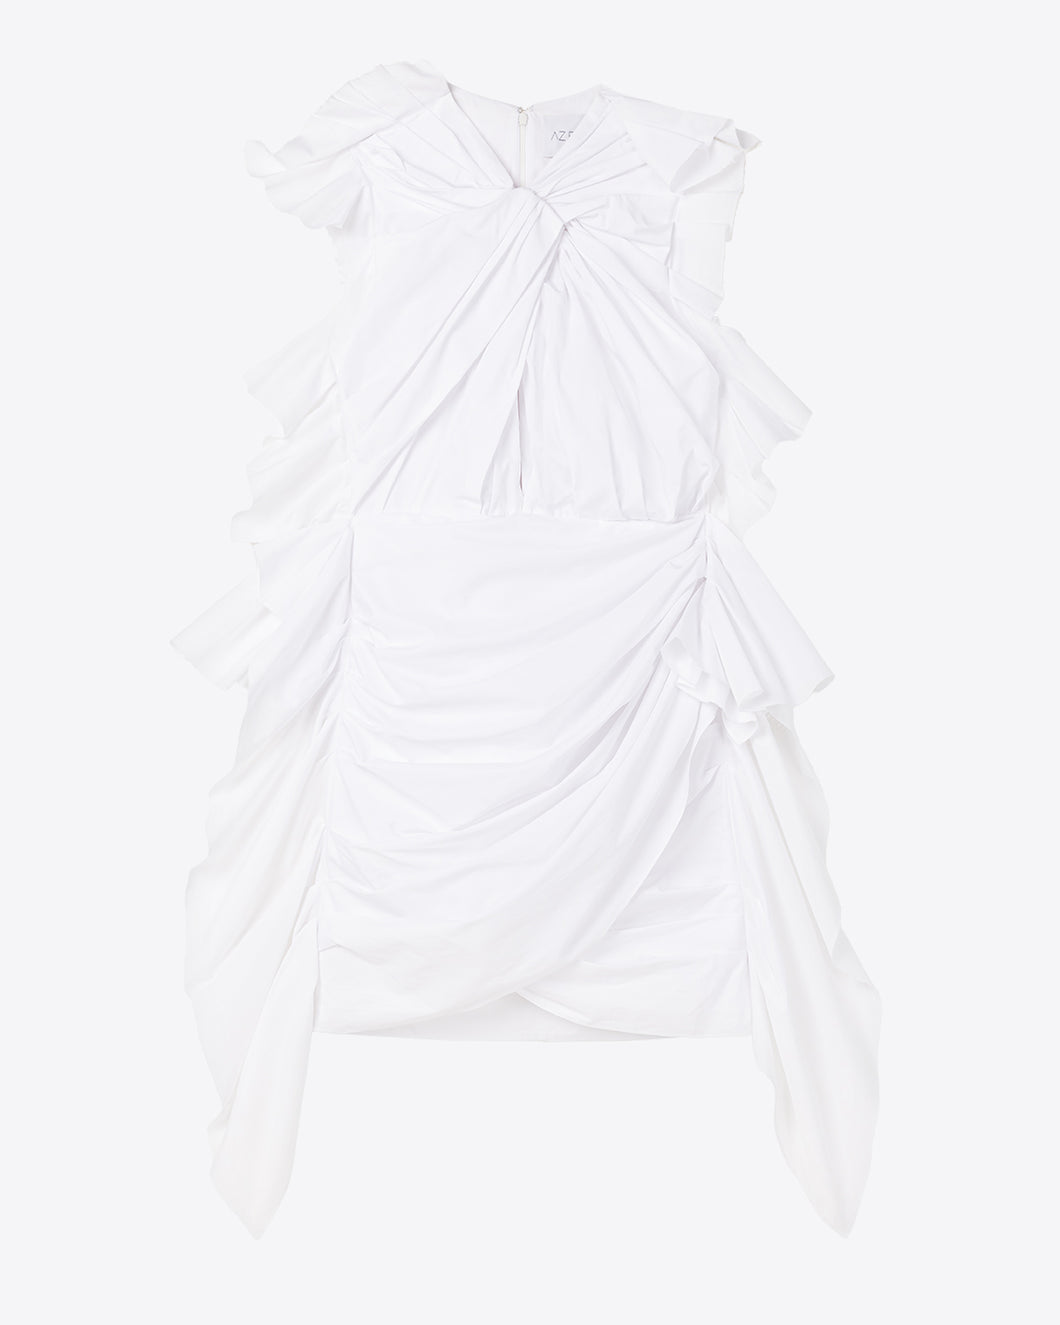 CALLA LILY DRESS - WHITE